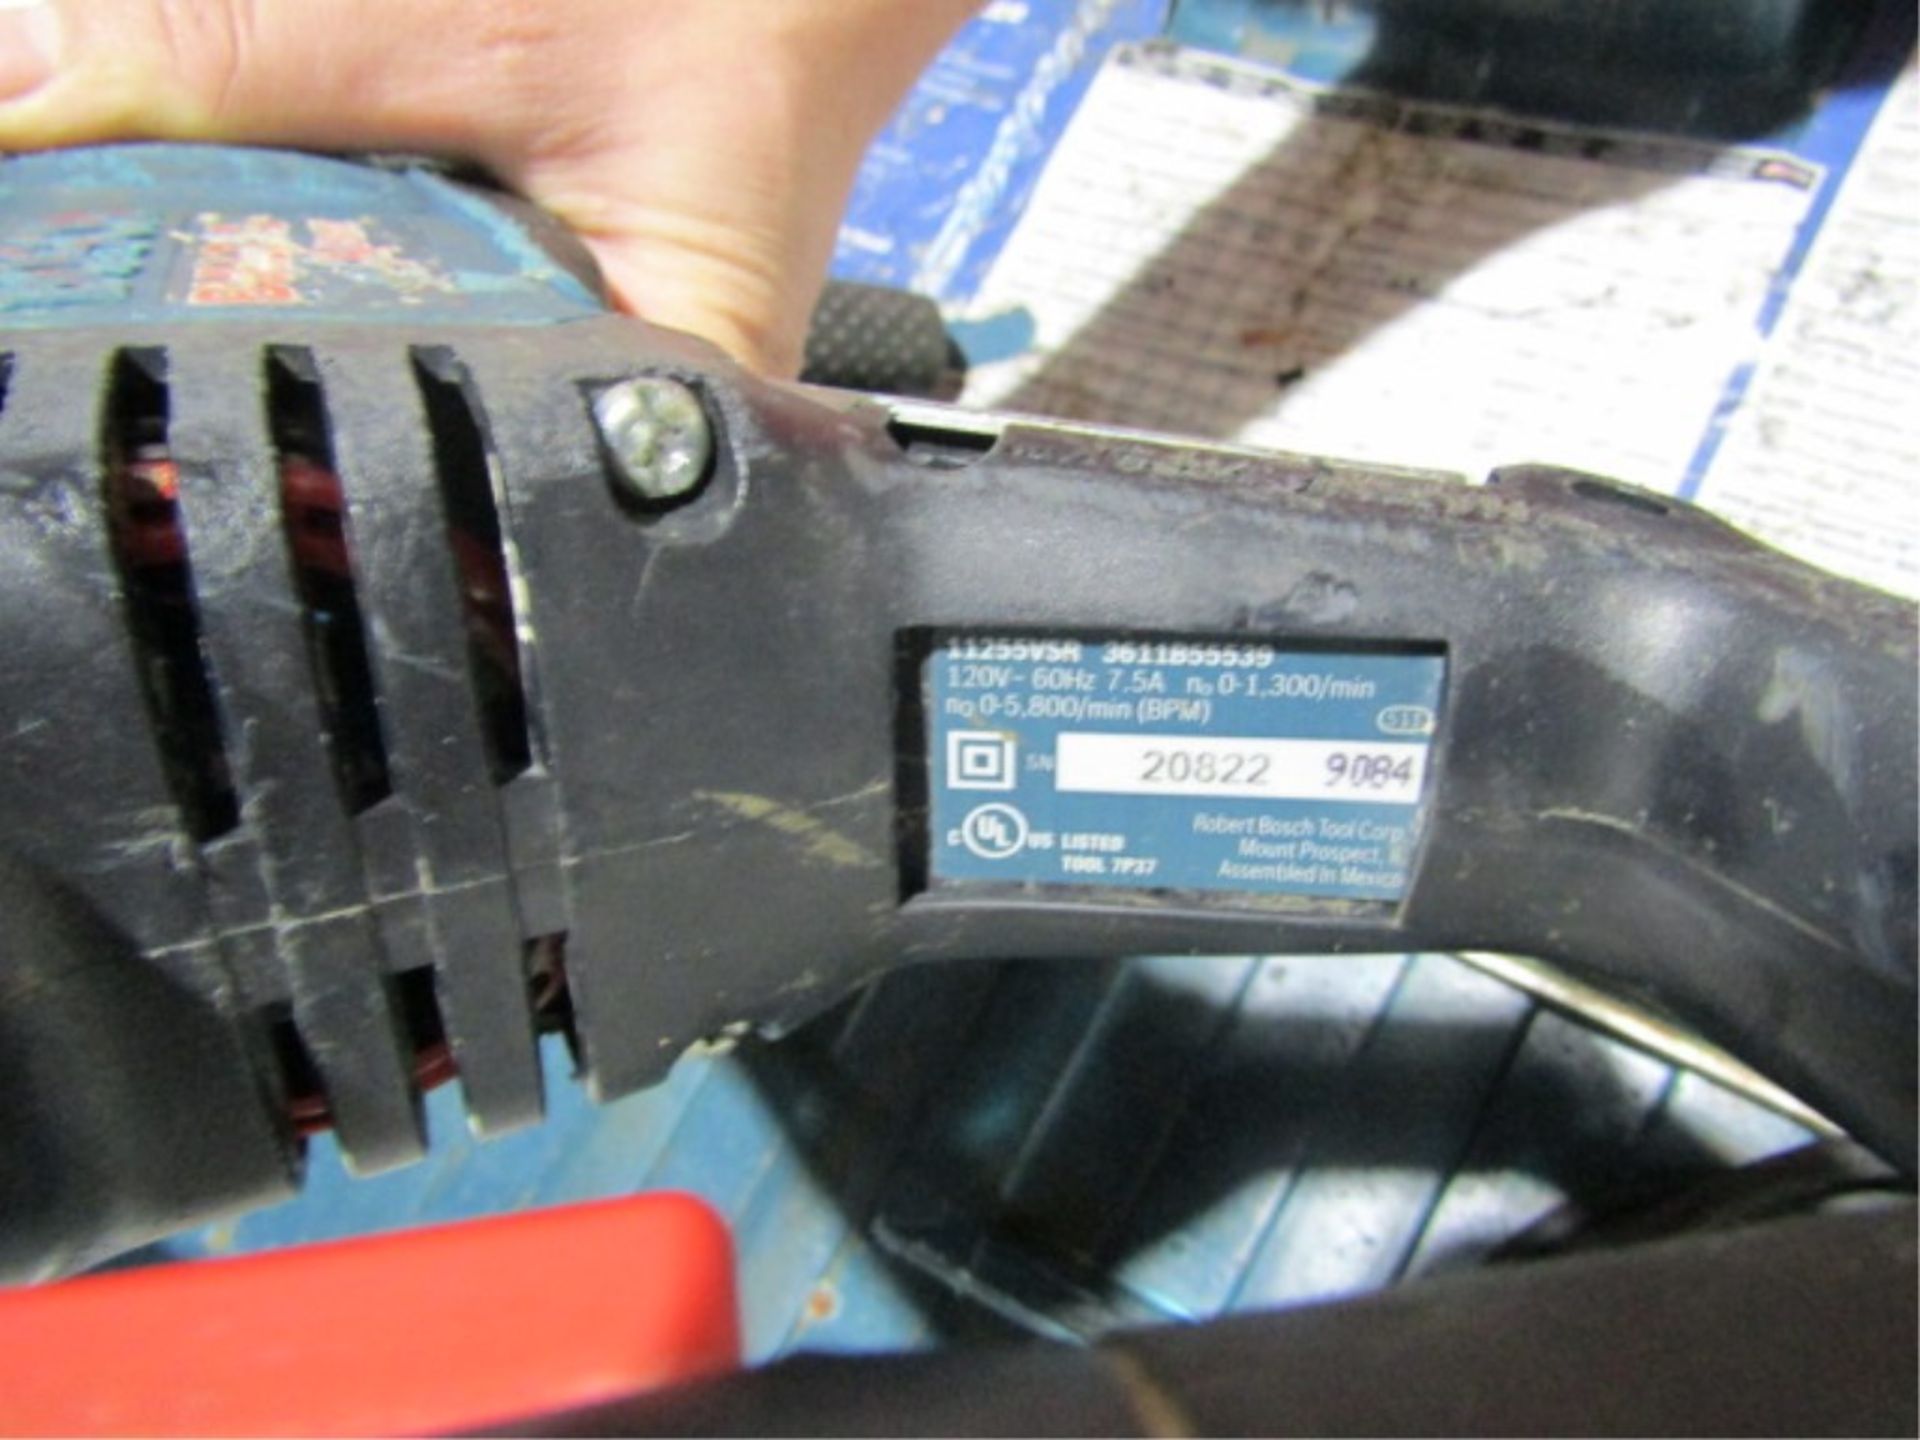 Bosch Bulldog Hammer Drill, Model 1125VSR, Serial #20822 - Image 2 of 2